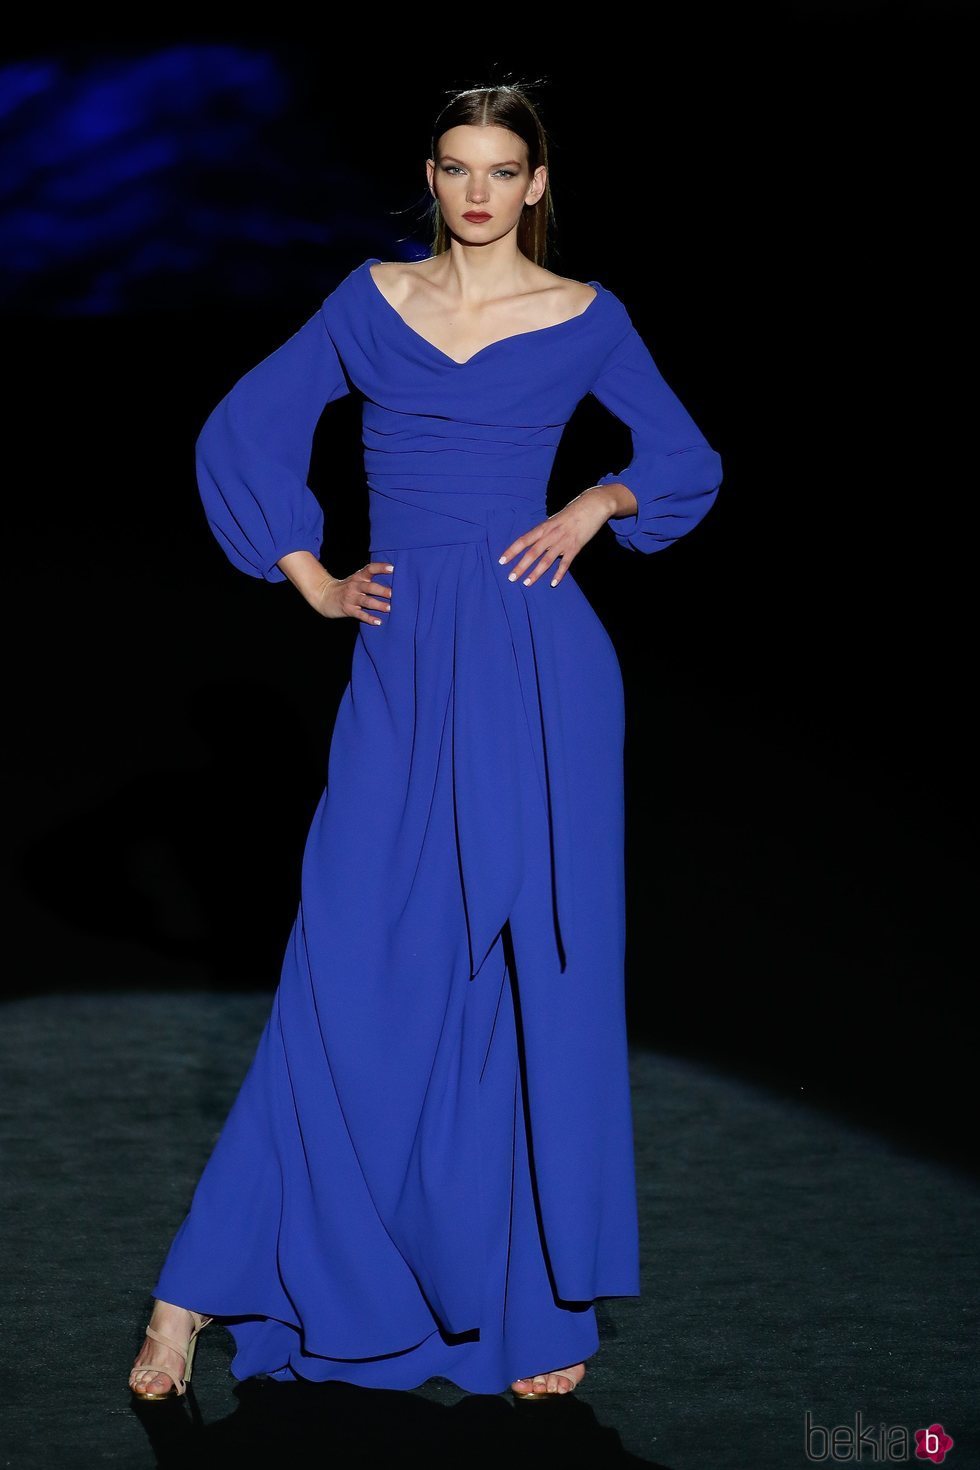 Vestido azul en el desfile otoño/invierno 2020-2021 de Hannibal Laguna